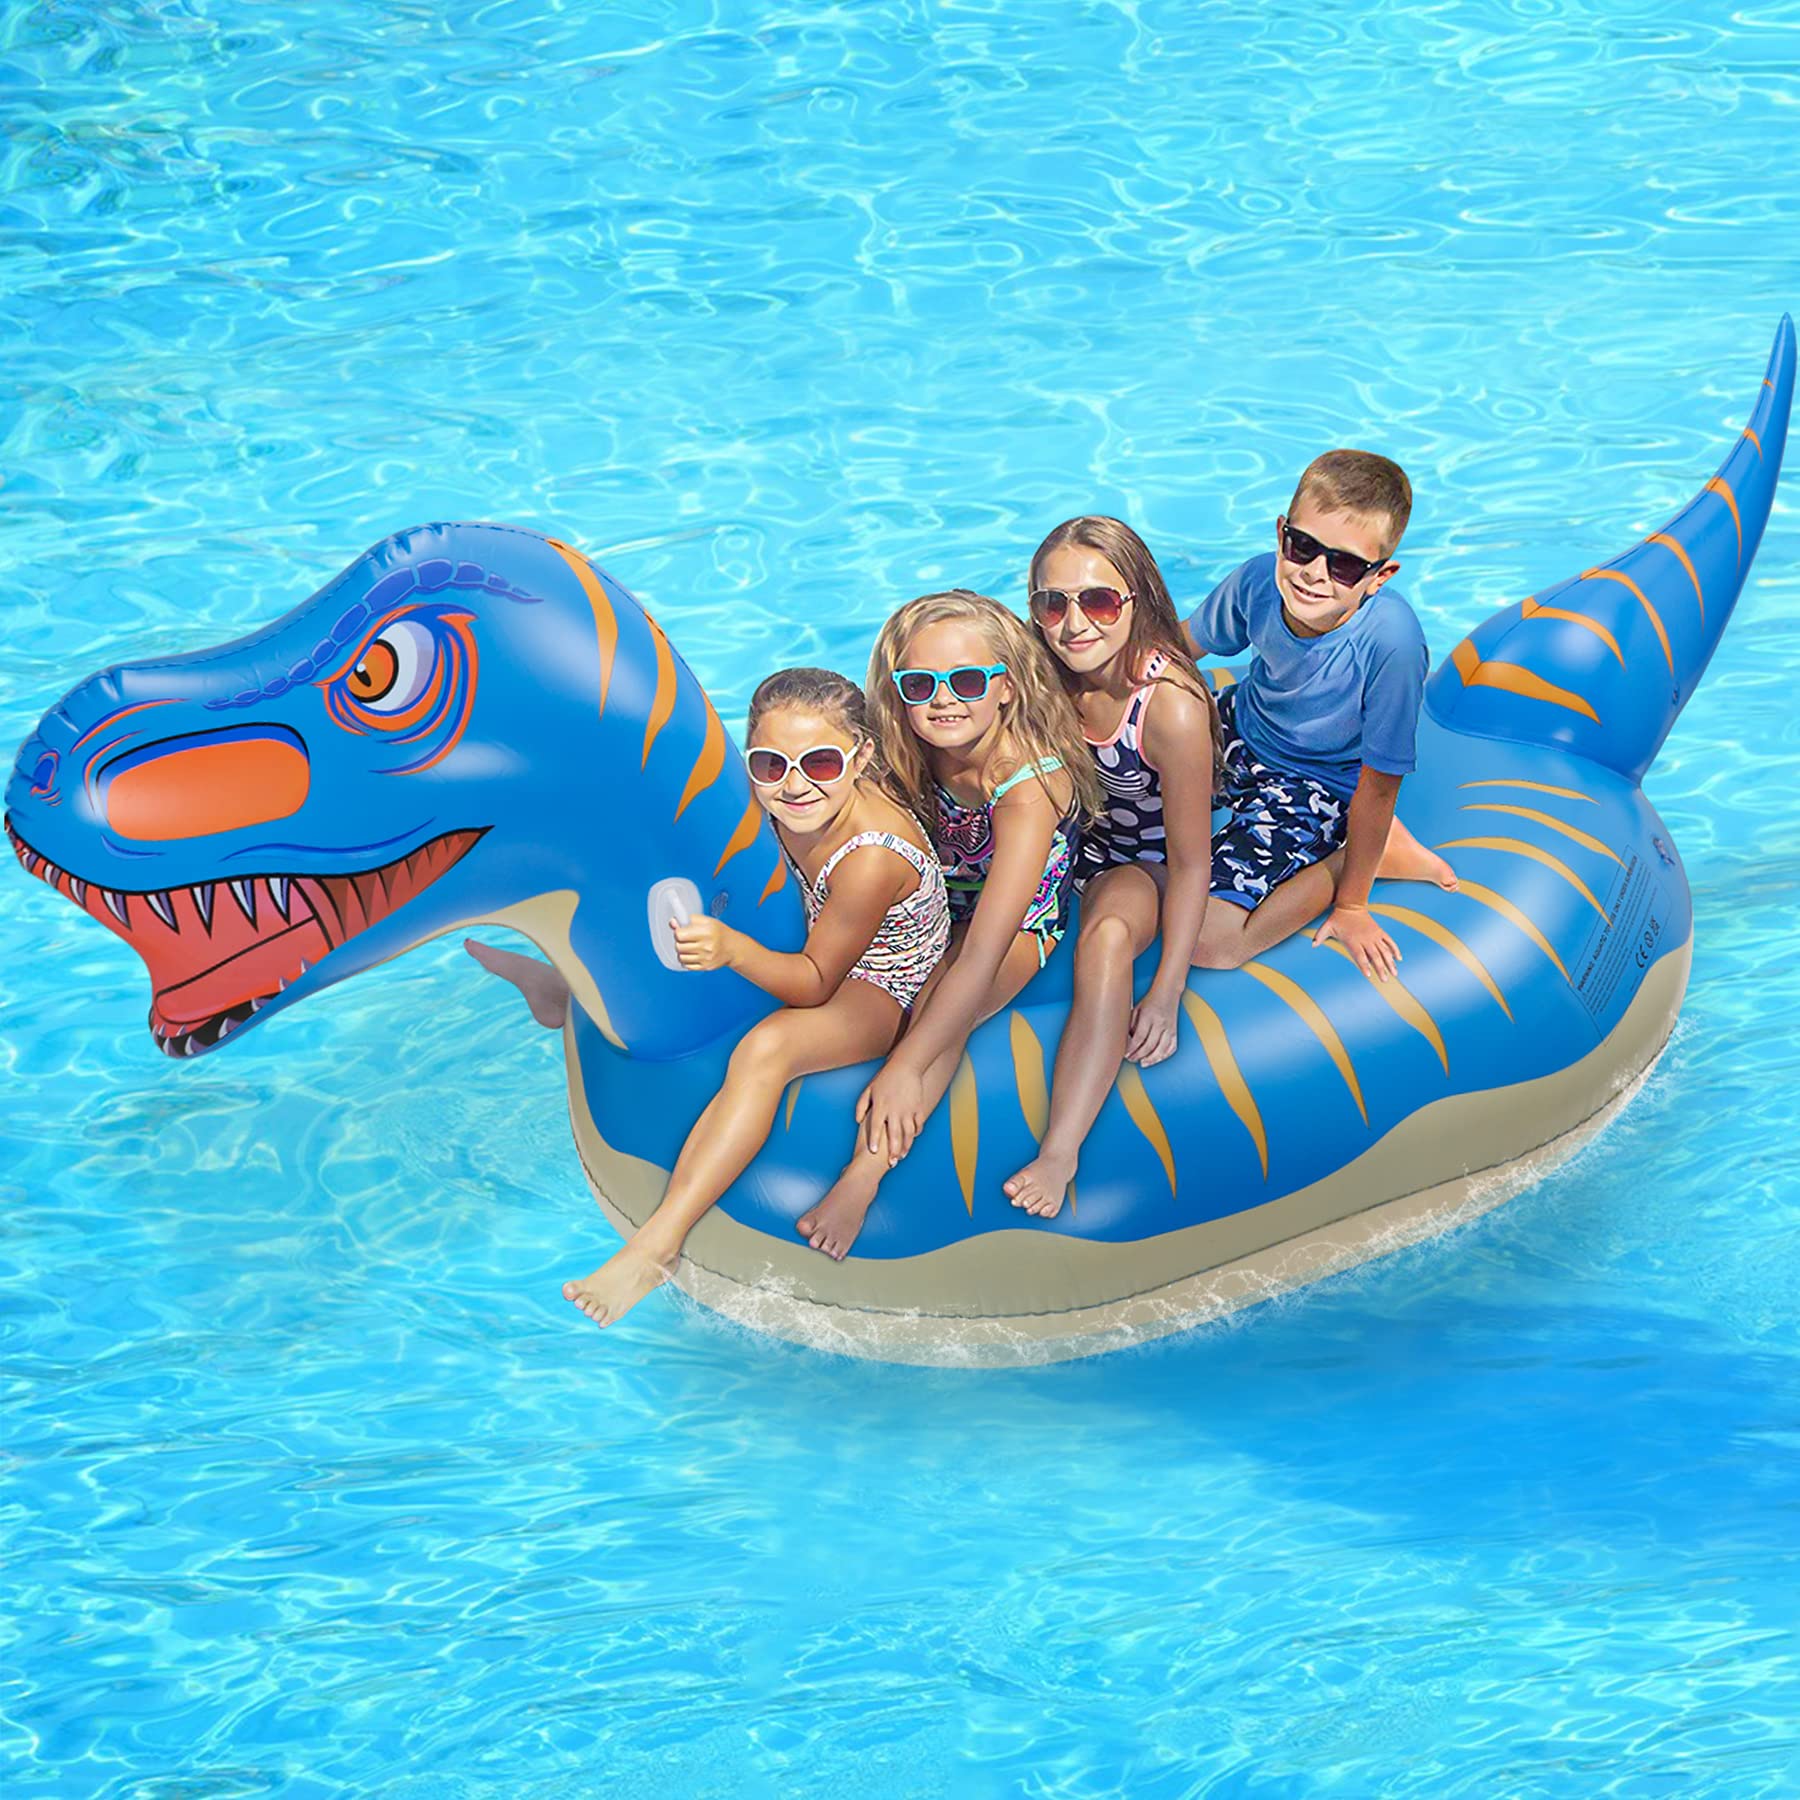 Jojoin Super Größe Dinosaurier Luftmatratze, 280×130×110cm Aufblasbares Dinosaurier Pool Floß, Aufblasbar Schwimmen Sommer Spielzeug im Freien mit Reparaturpflaster für Erwachsene und Kinder